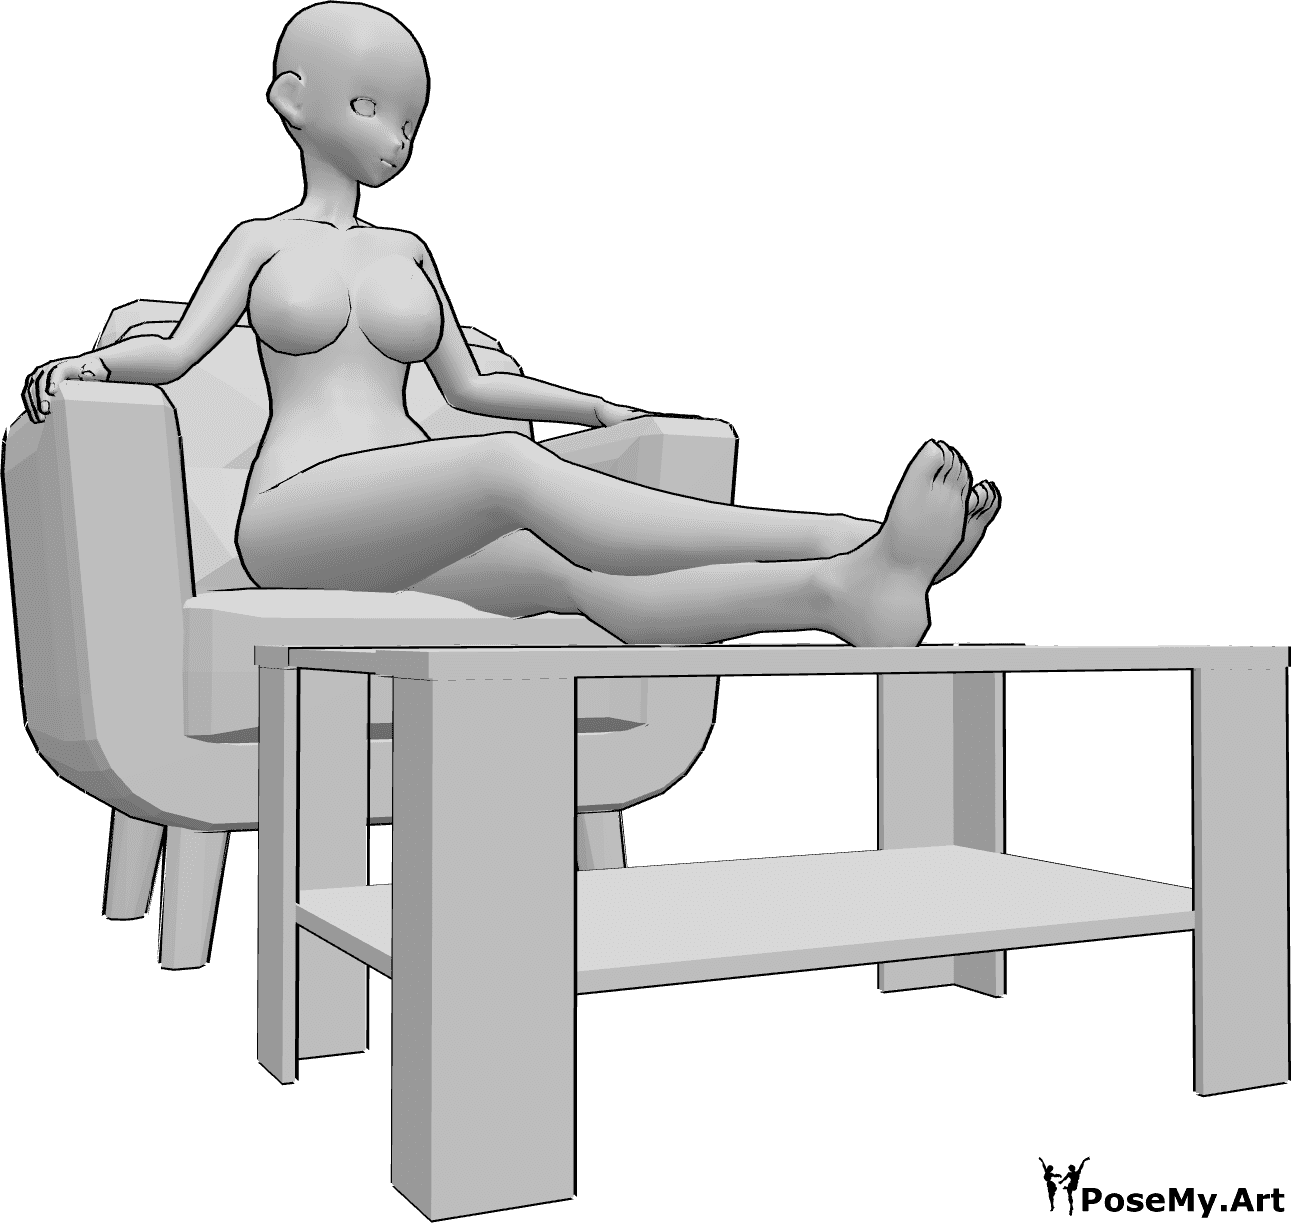 Riferimento alle pose- Posa delle gambe a riposo in stile anime - Una donna animata è seduta in poltrona e appoggia le gambe su un tavolino.